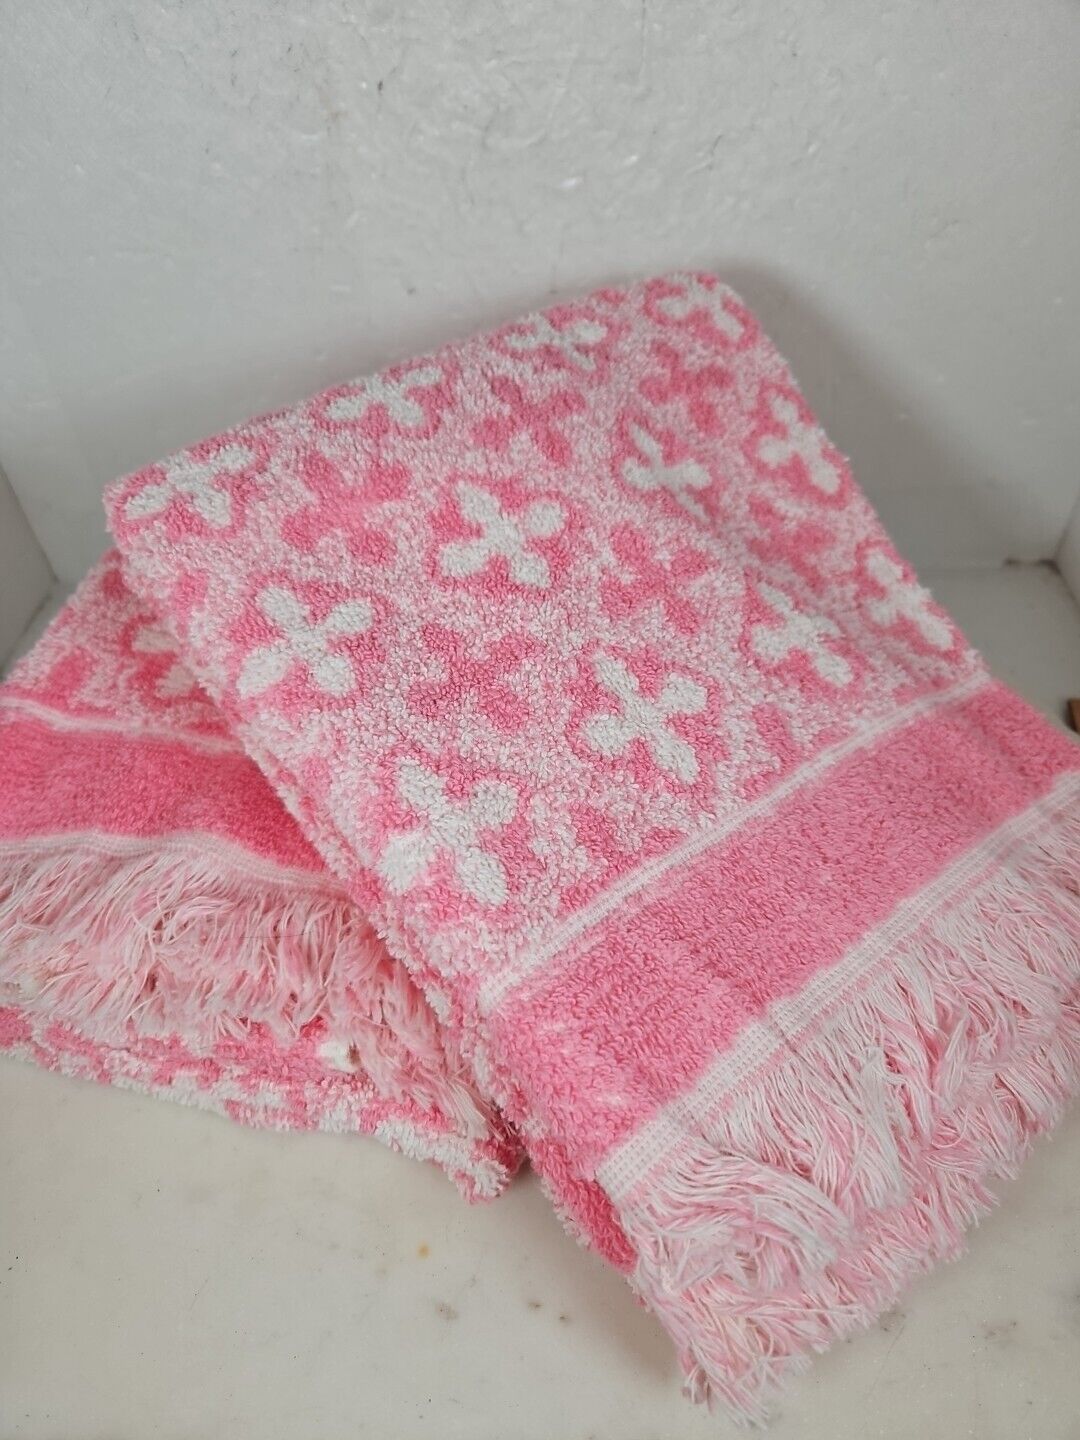 2 Vintage J.C. Penney Pink/White Floral Patterned Bath Towels